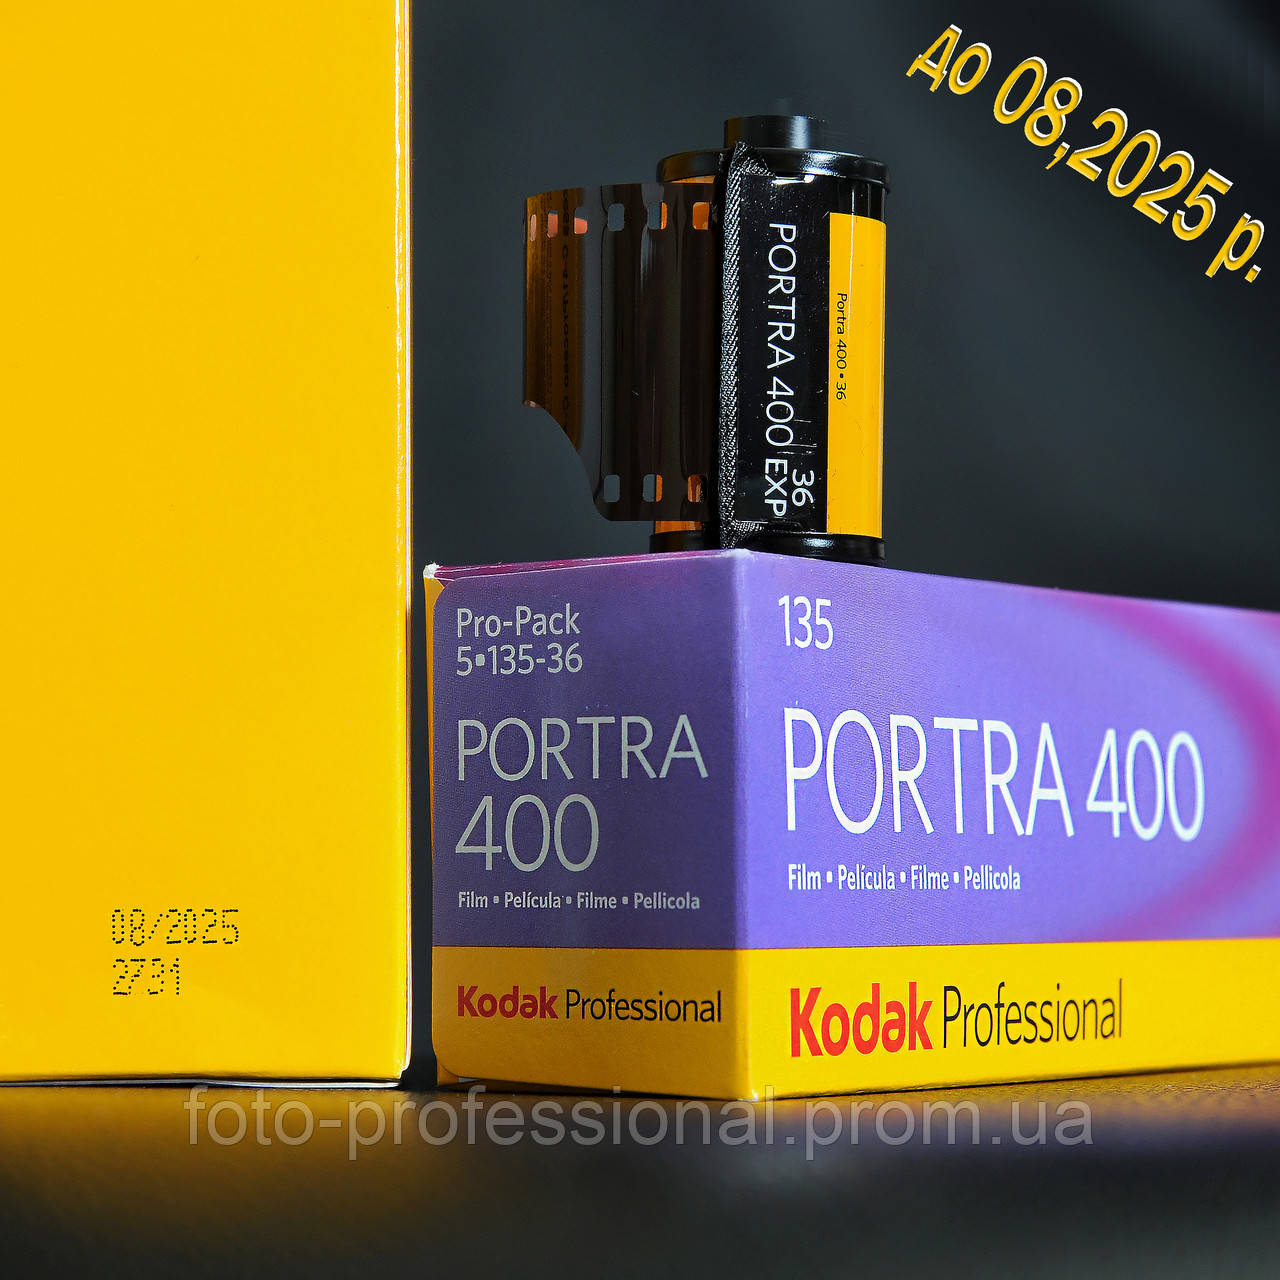 Фотоплівка  Kodak PORTRA 400/36 1 шт. (08,2025р)